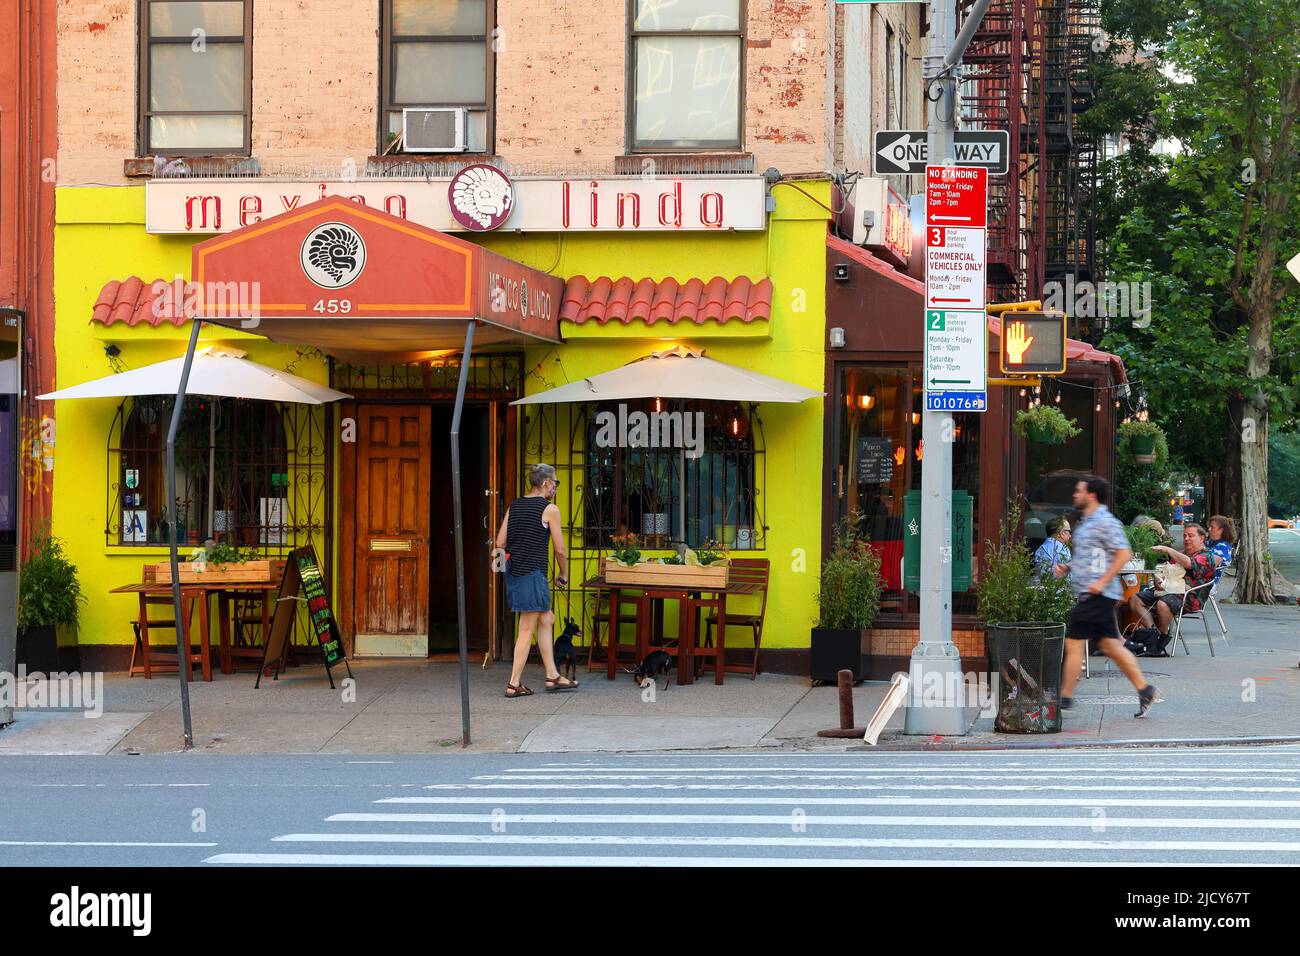 Mexico Lindo, 459 2. Ave, New York, NYC Foto von einem mexikanischen Restaurant im Stadtteil Kips Bay in Manhattan. Stockfoto